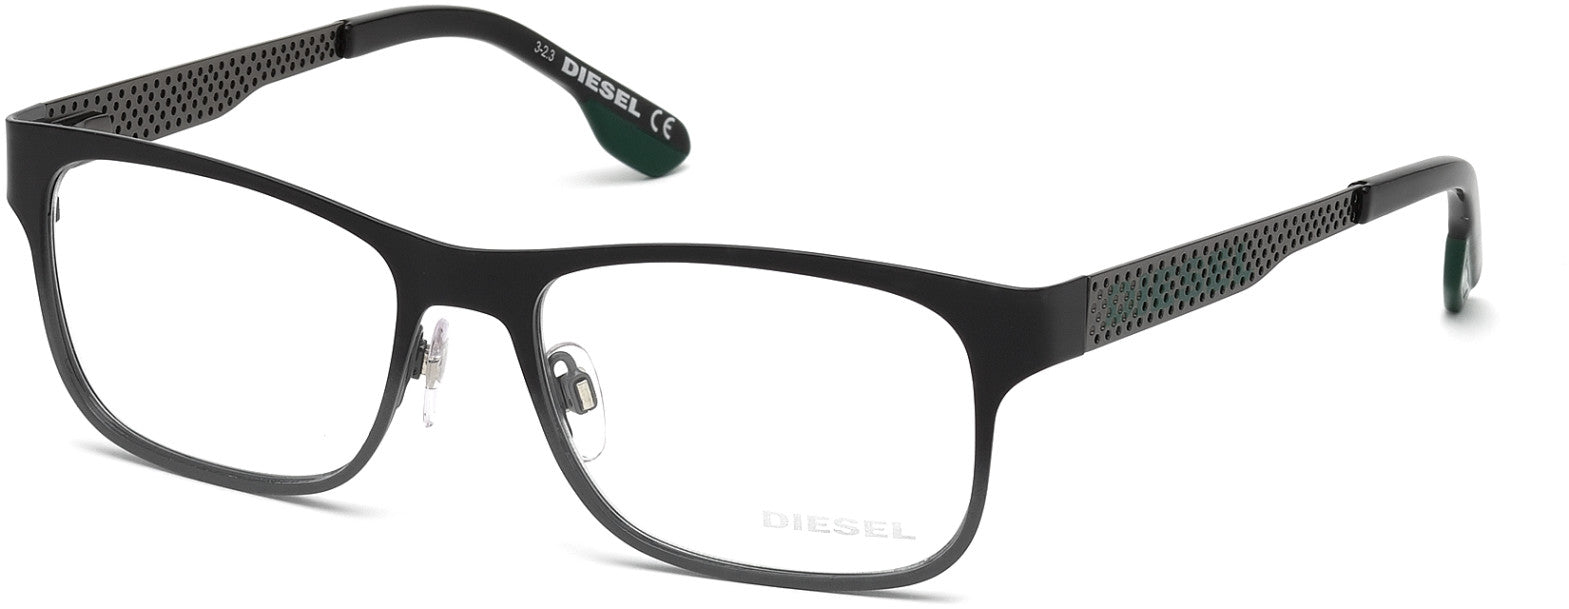 Diesel DL5074 Geometric Eyeglasses 005-005 - Black